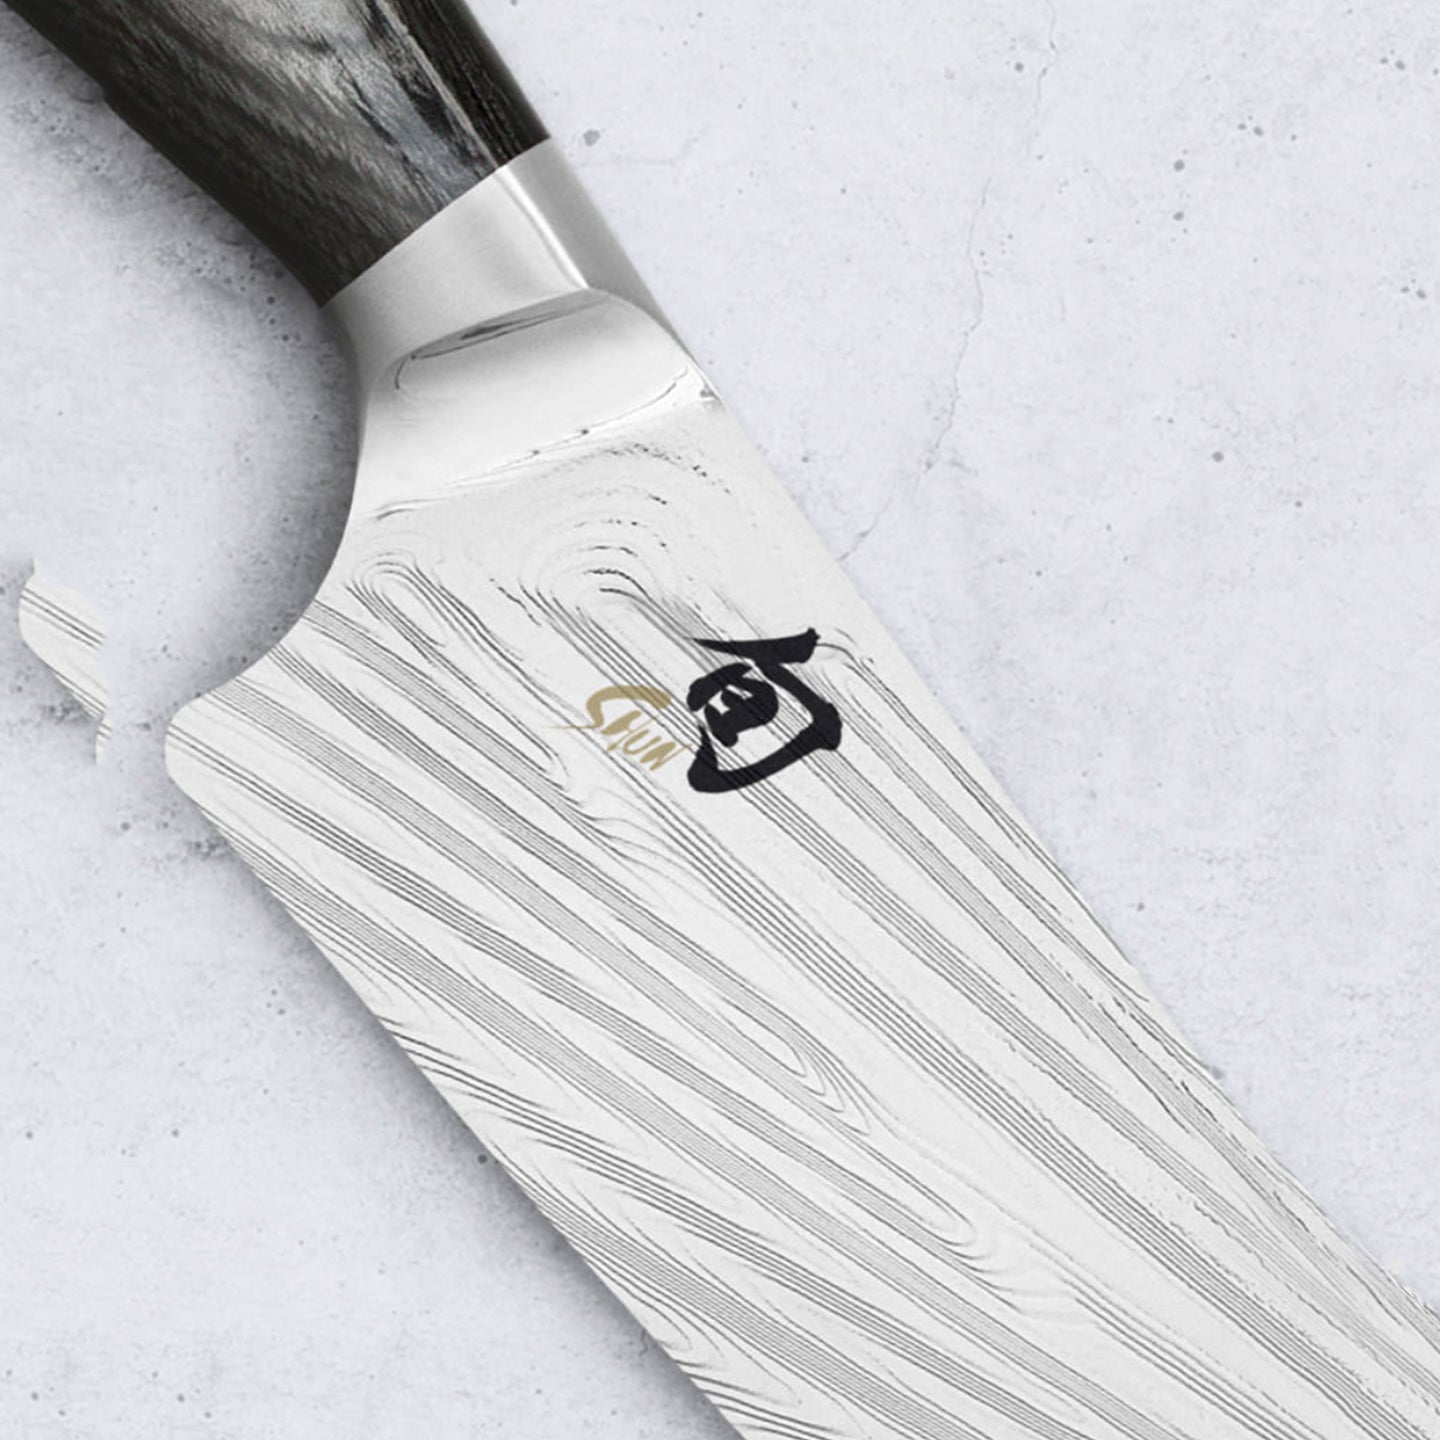 Kai Shun Nagare Slicing Knife / 23cm